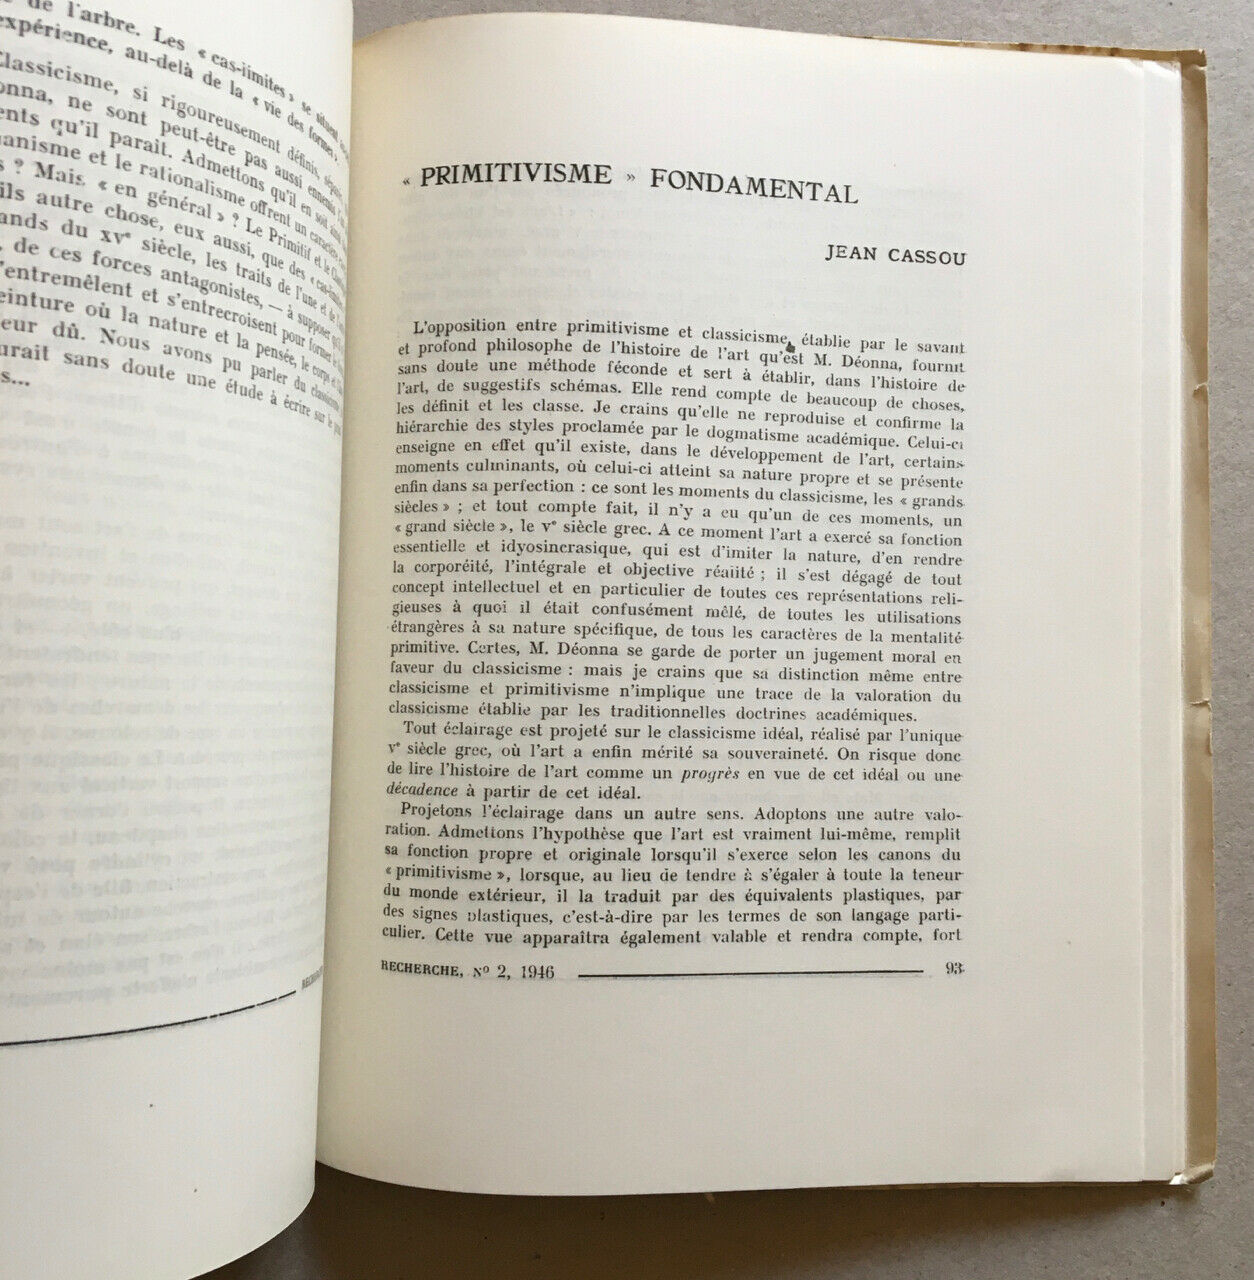 Recherche n° 2 — Primitivisme & classicisme, 2 faces histoire de l'art — 1946.